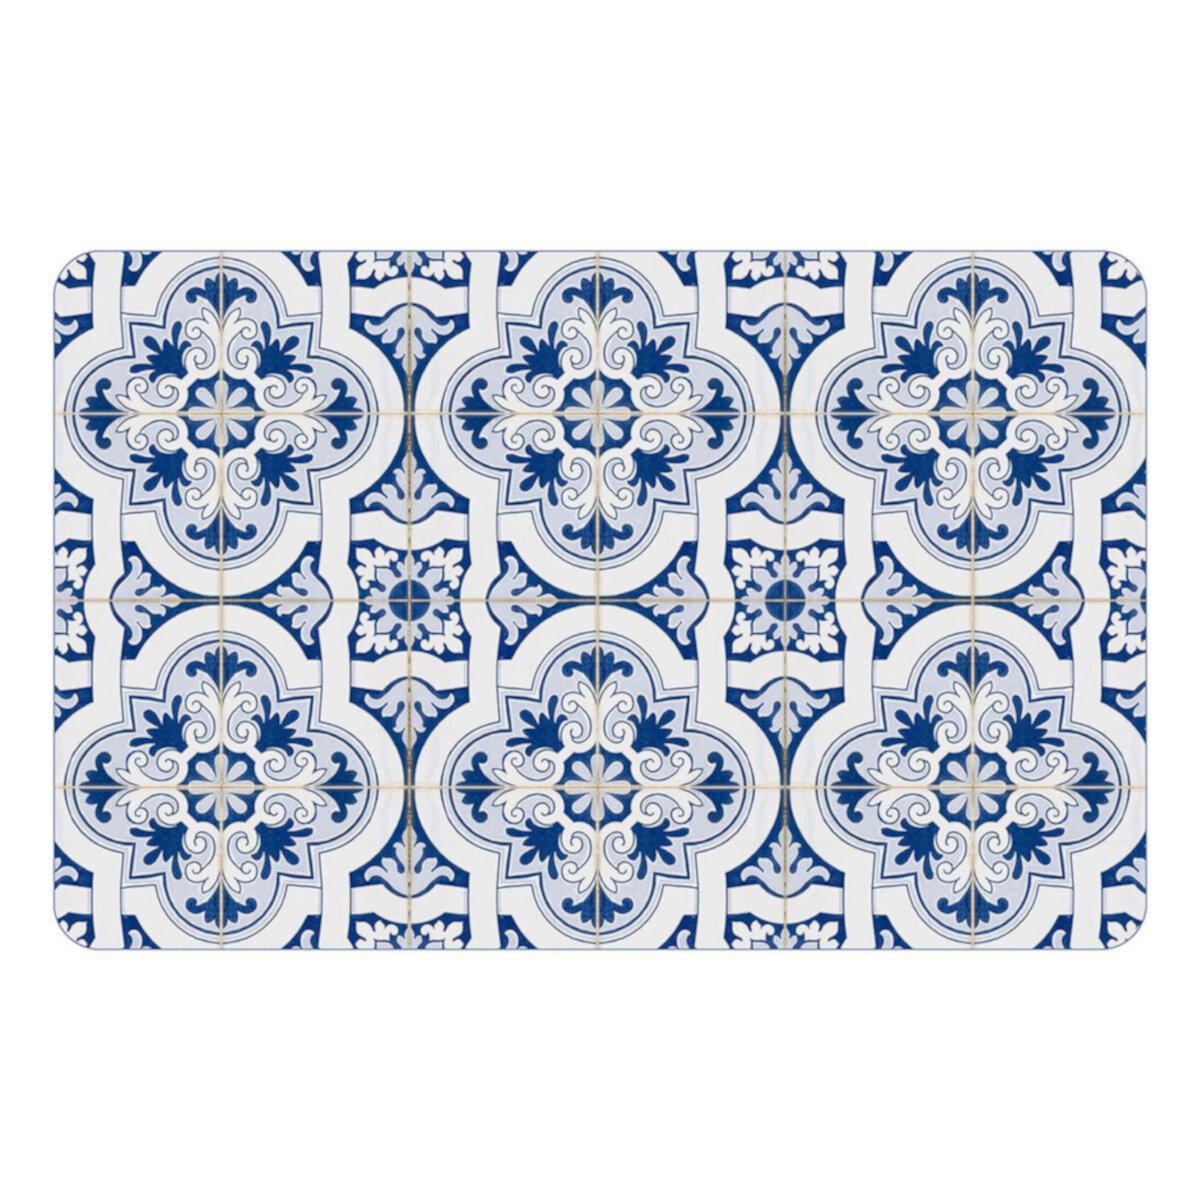 Напольное покрытие для бунгало, плитка Ancona, коврик для использования на открытом воздухе — 24 x 36 дюймов Bungalow Flooring